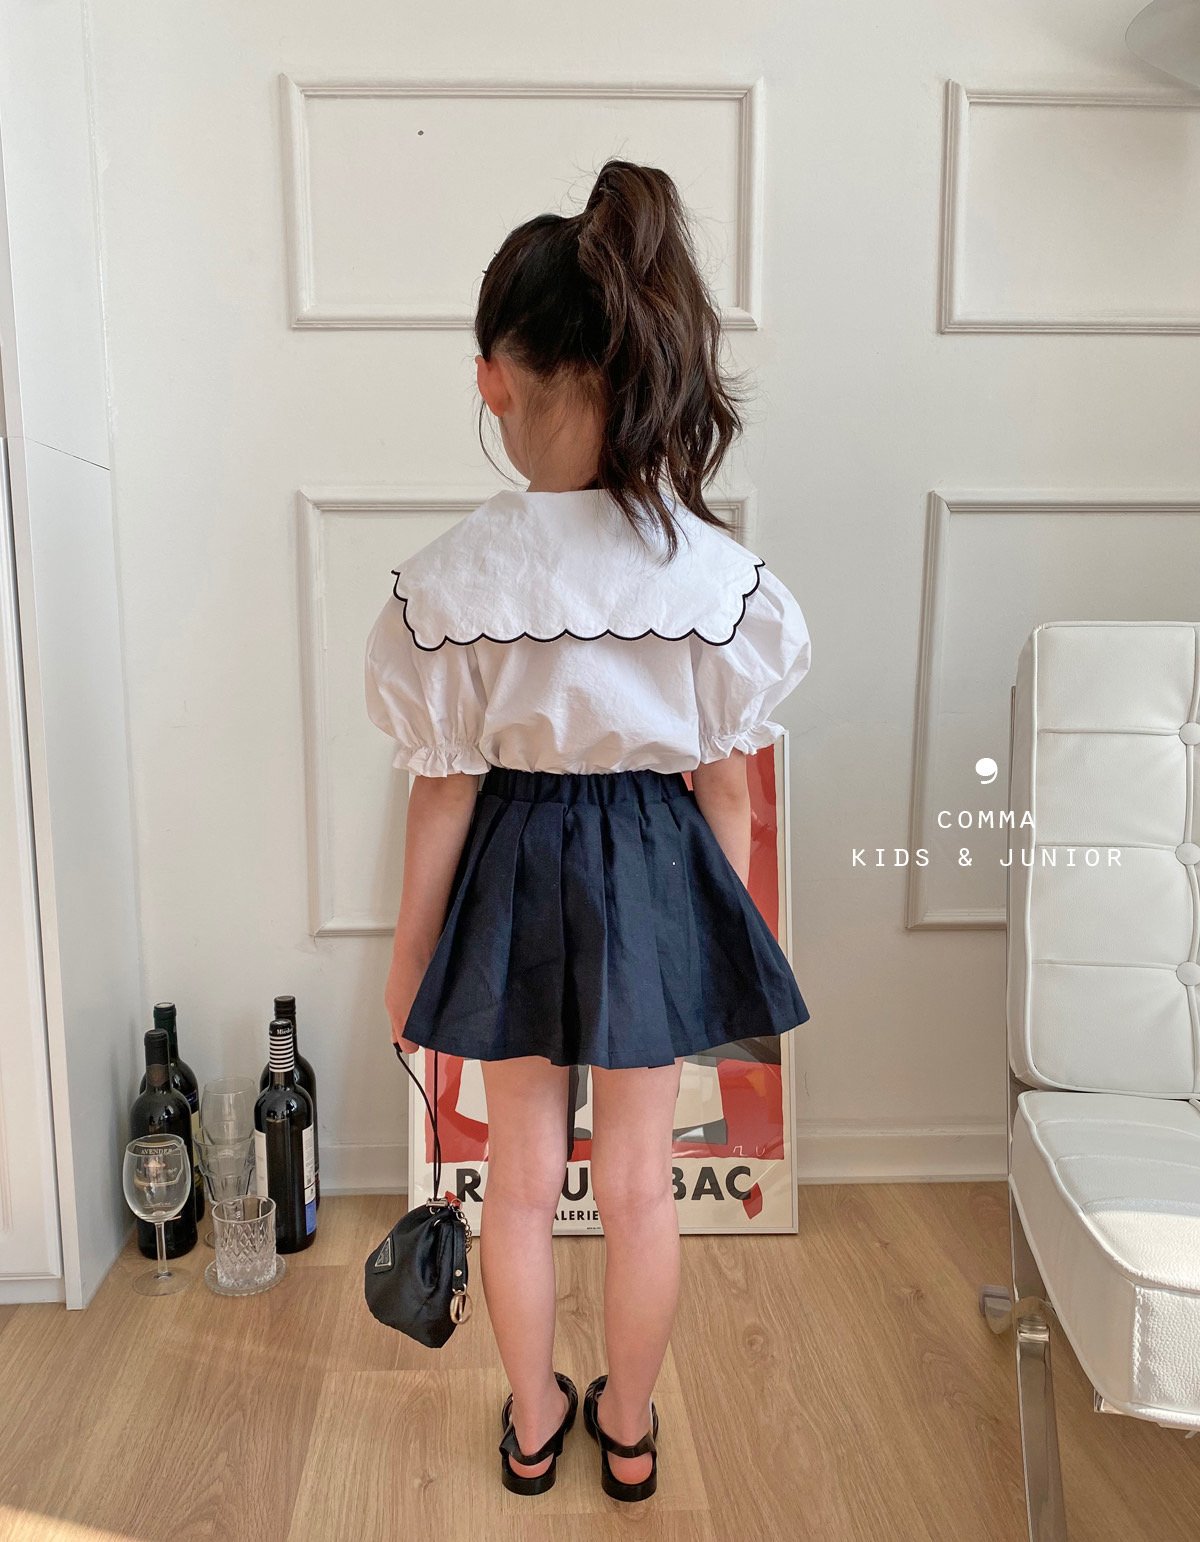 【注文後取り寄せ】韓国子供服 Comma 女の子 子供服 スカラップブラウス　2色 90-150サイズ